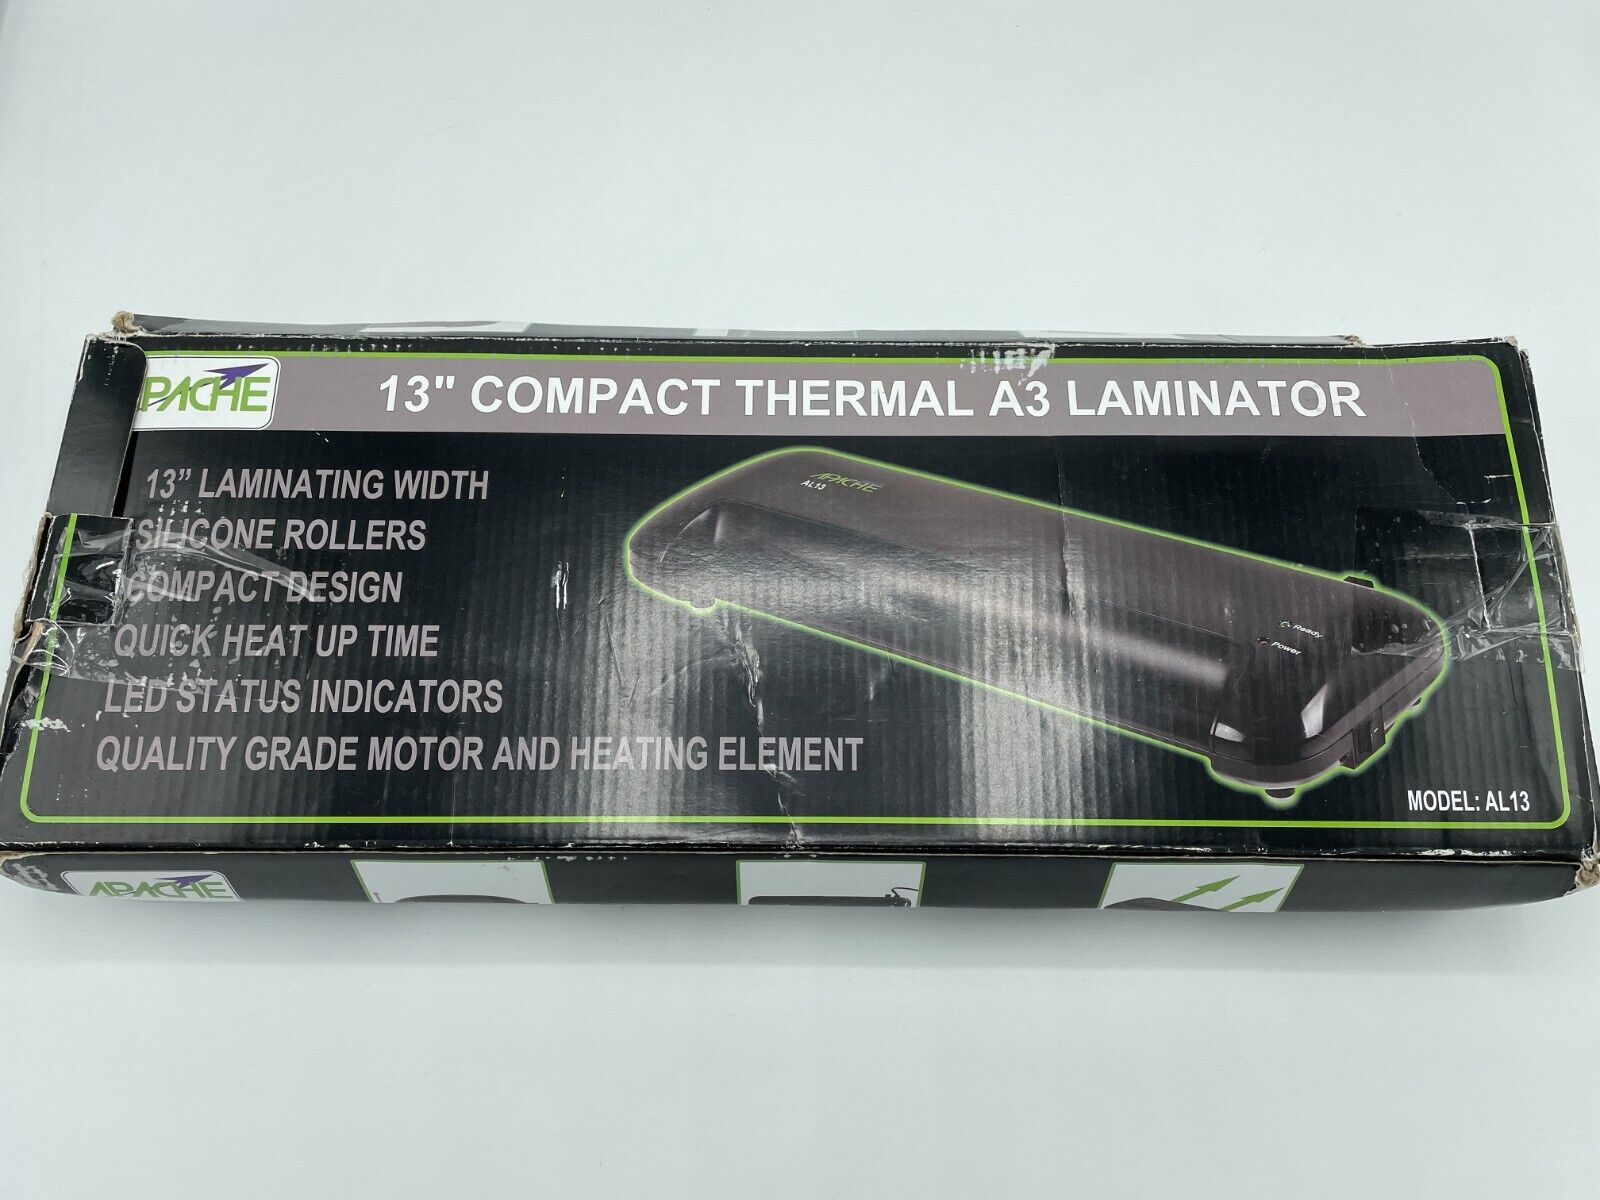 Apache Al13 13" Thermal Laminator A3 Compact Design